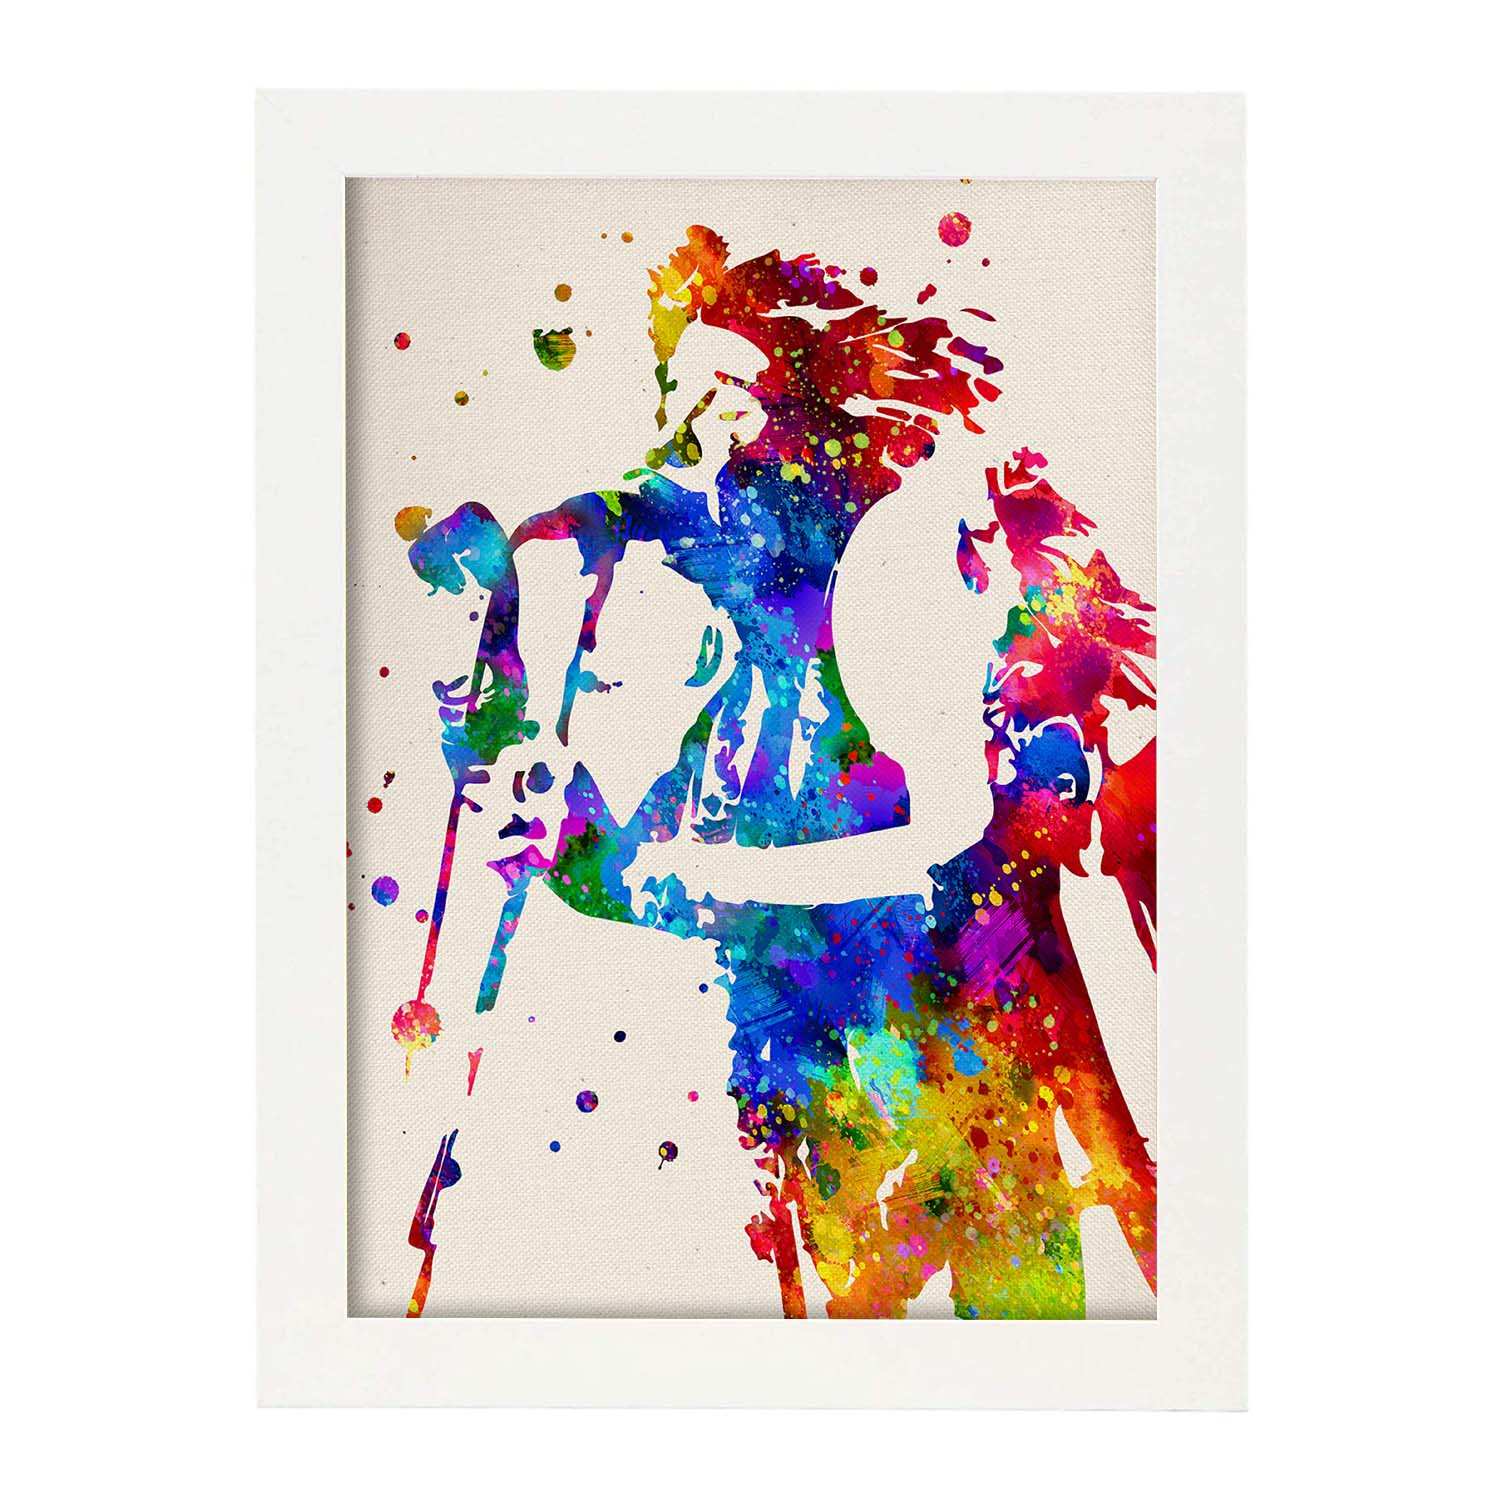 Poster imagen de Janis Joplin. Posters con diseño acuarela de famosos, actores, músicos-Artwork-Nacnic-A3-Marco Blanco-Nacnic Estudio SL